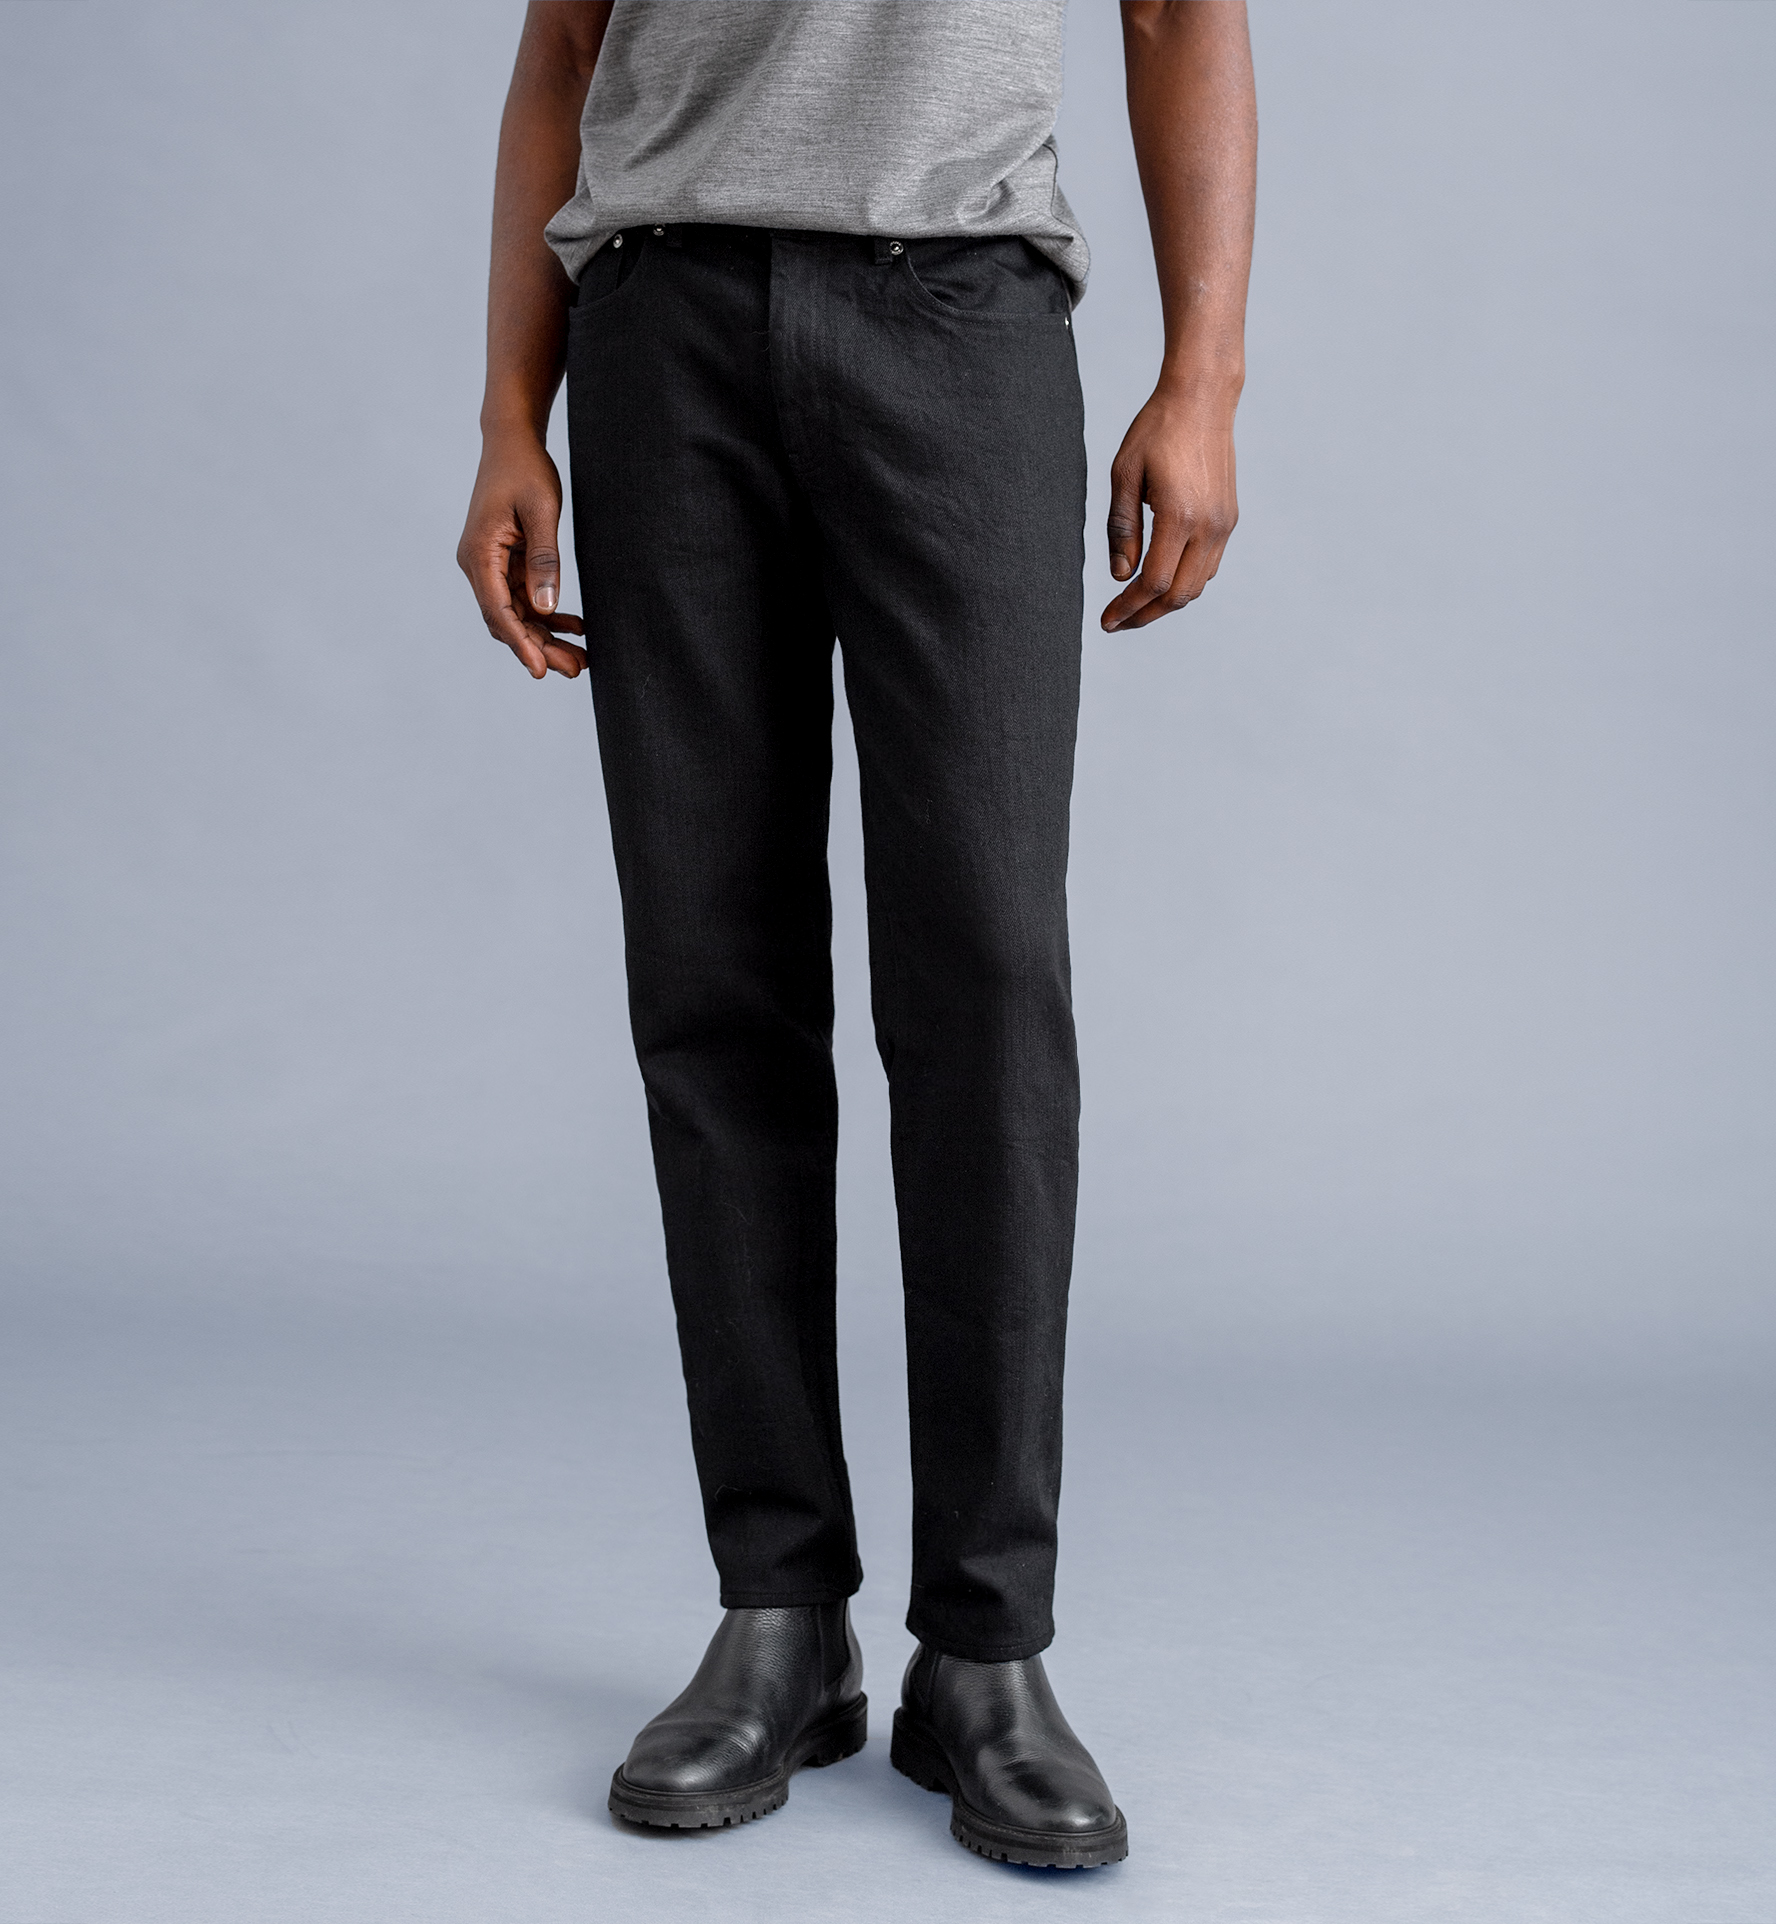 Men's Pants: Chino, Dress & Active Pants | Tommy Bahama